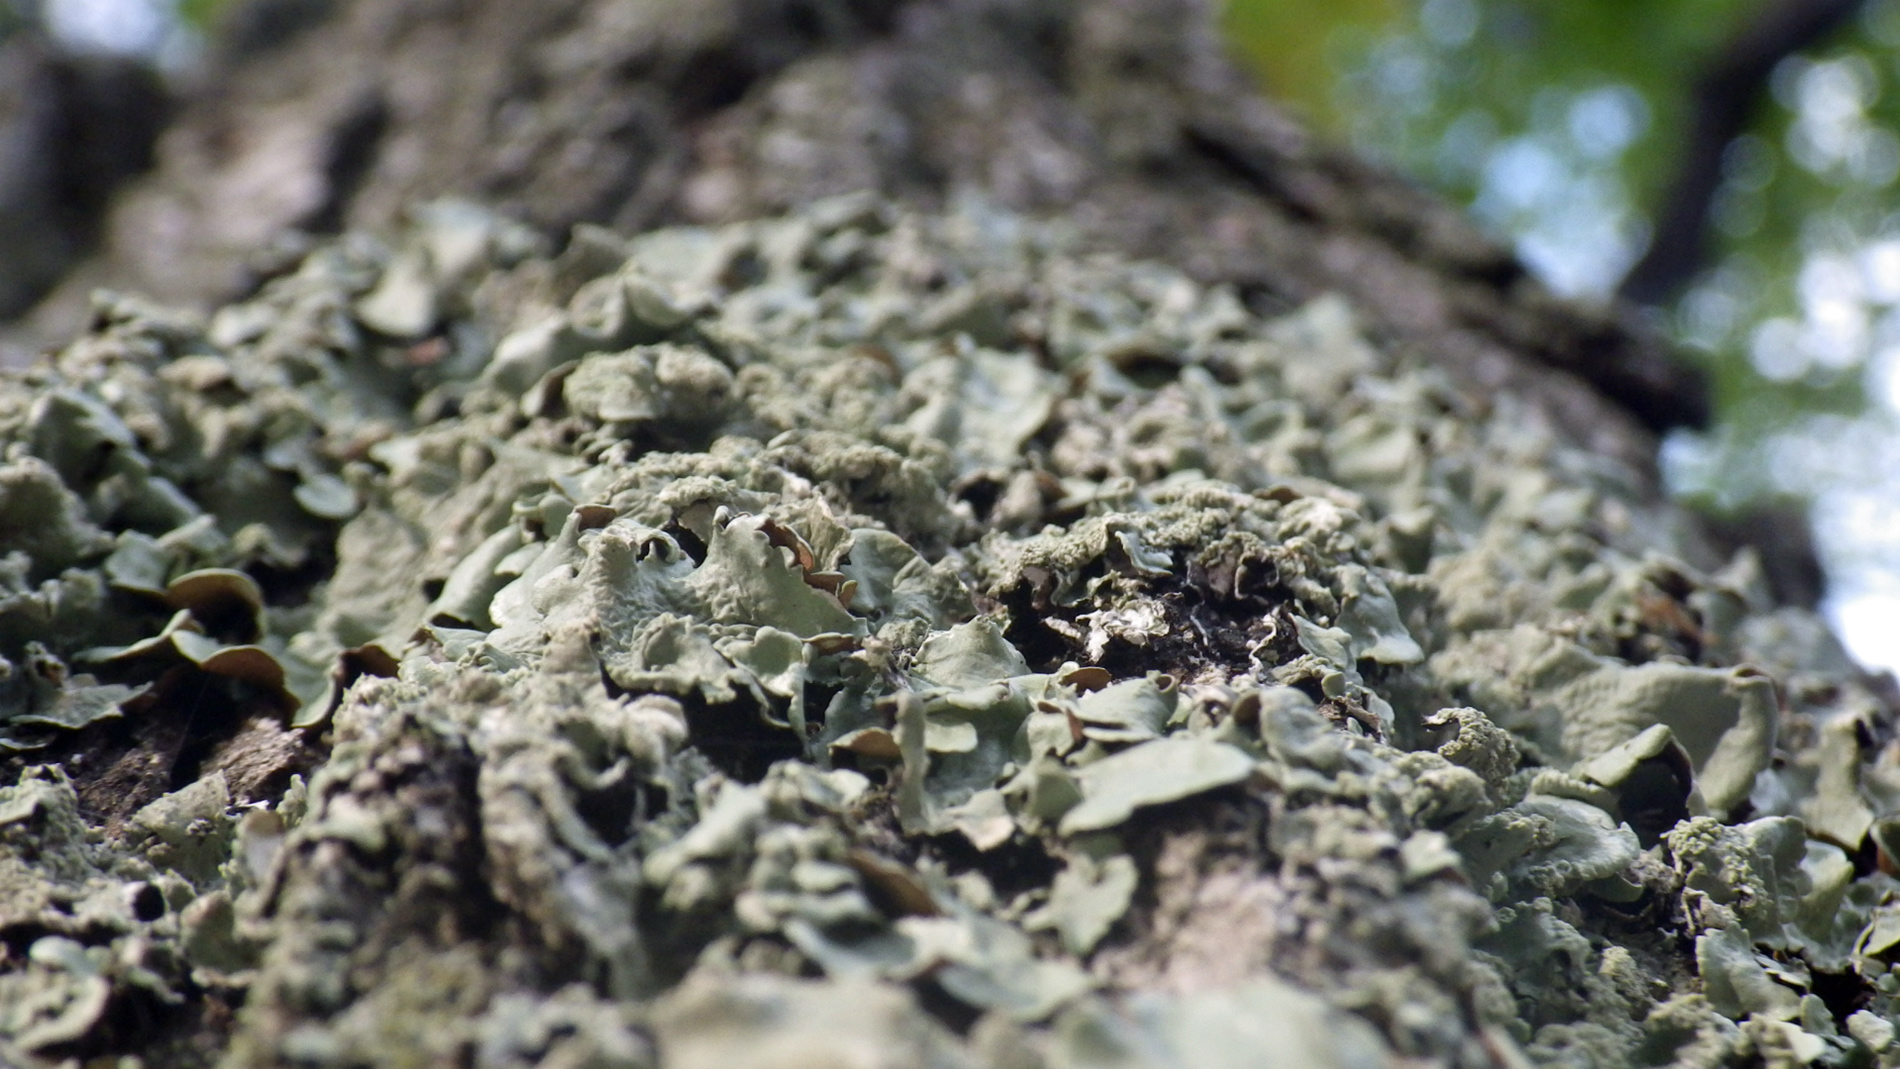 Lichen on log.